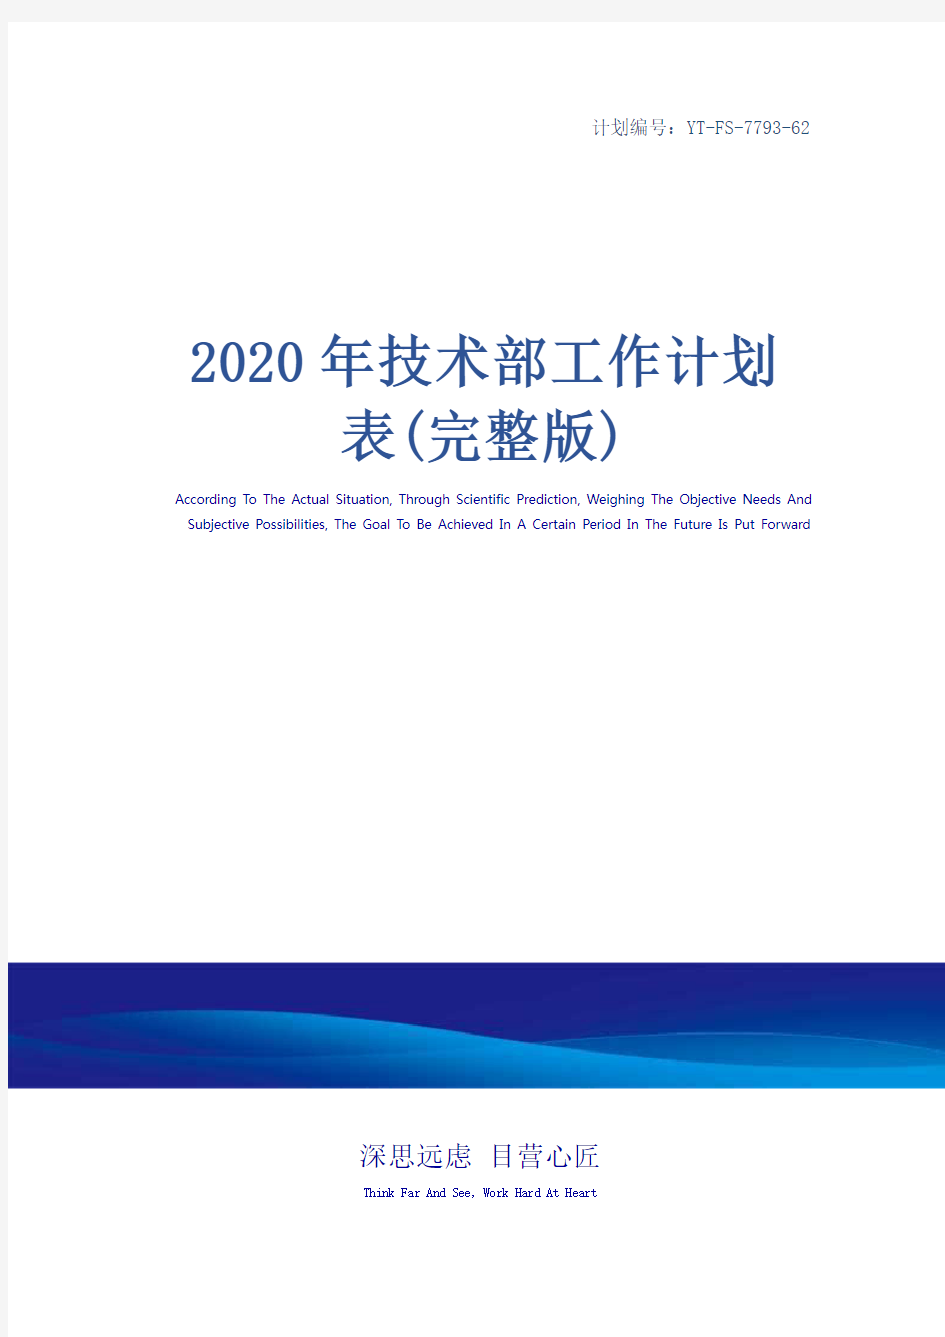 2020年技术部工作计划表(完整版)